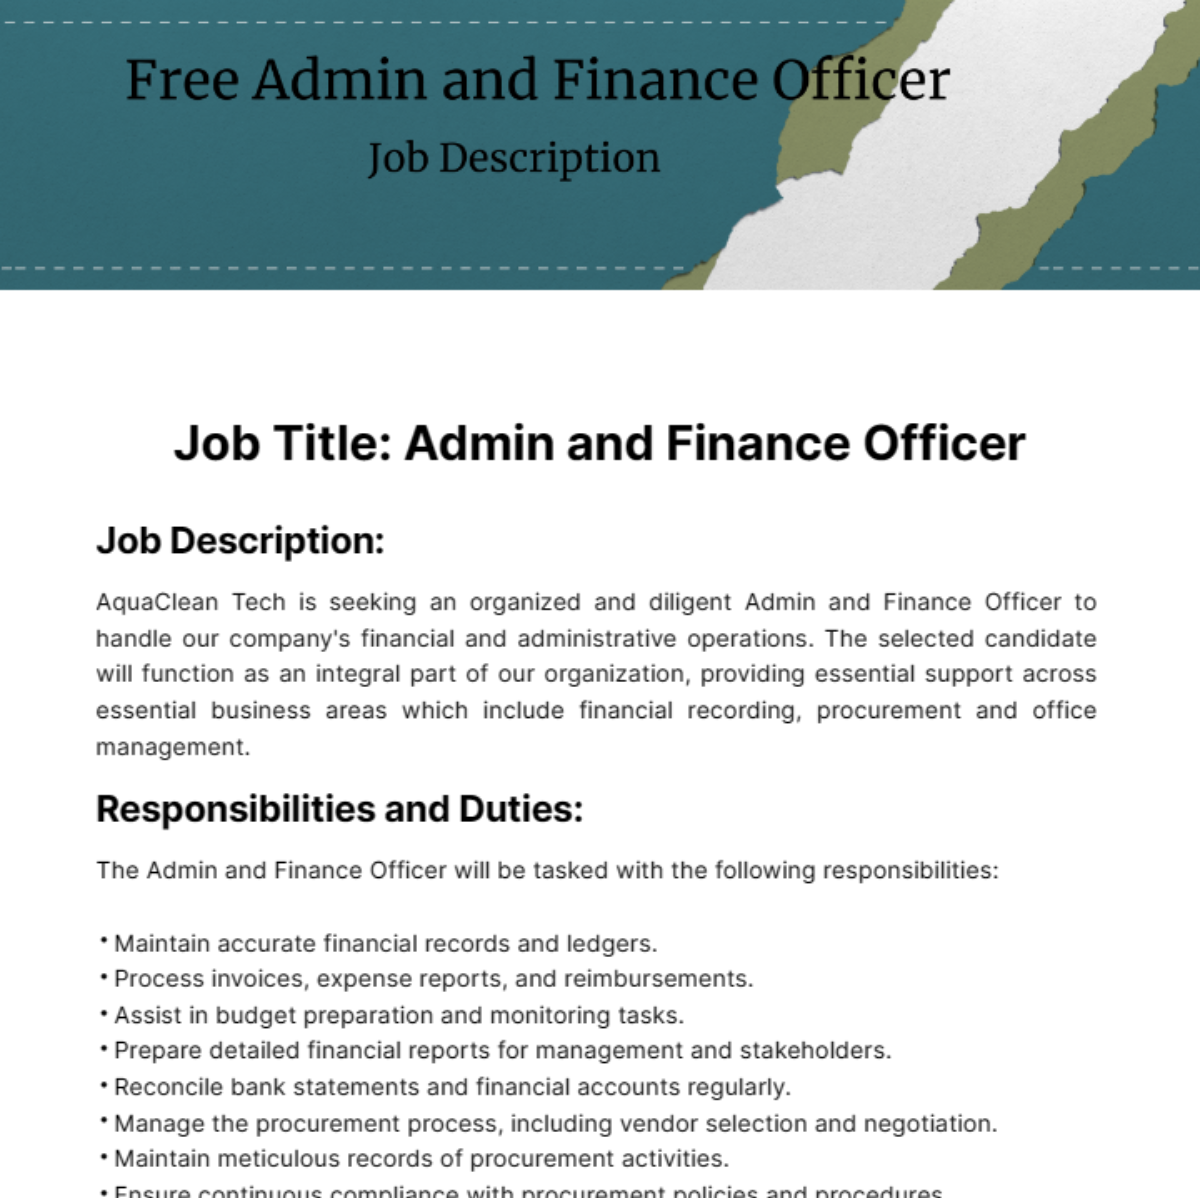 Admin and Finance Officer Job Description Template